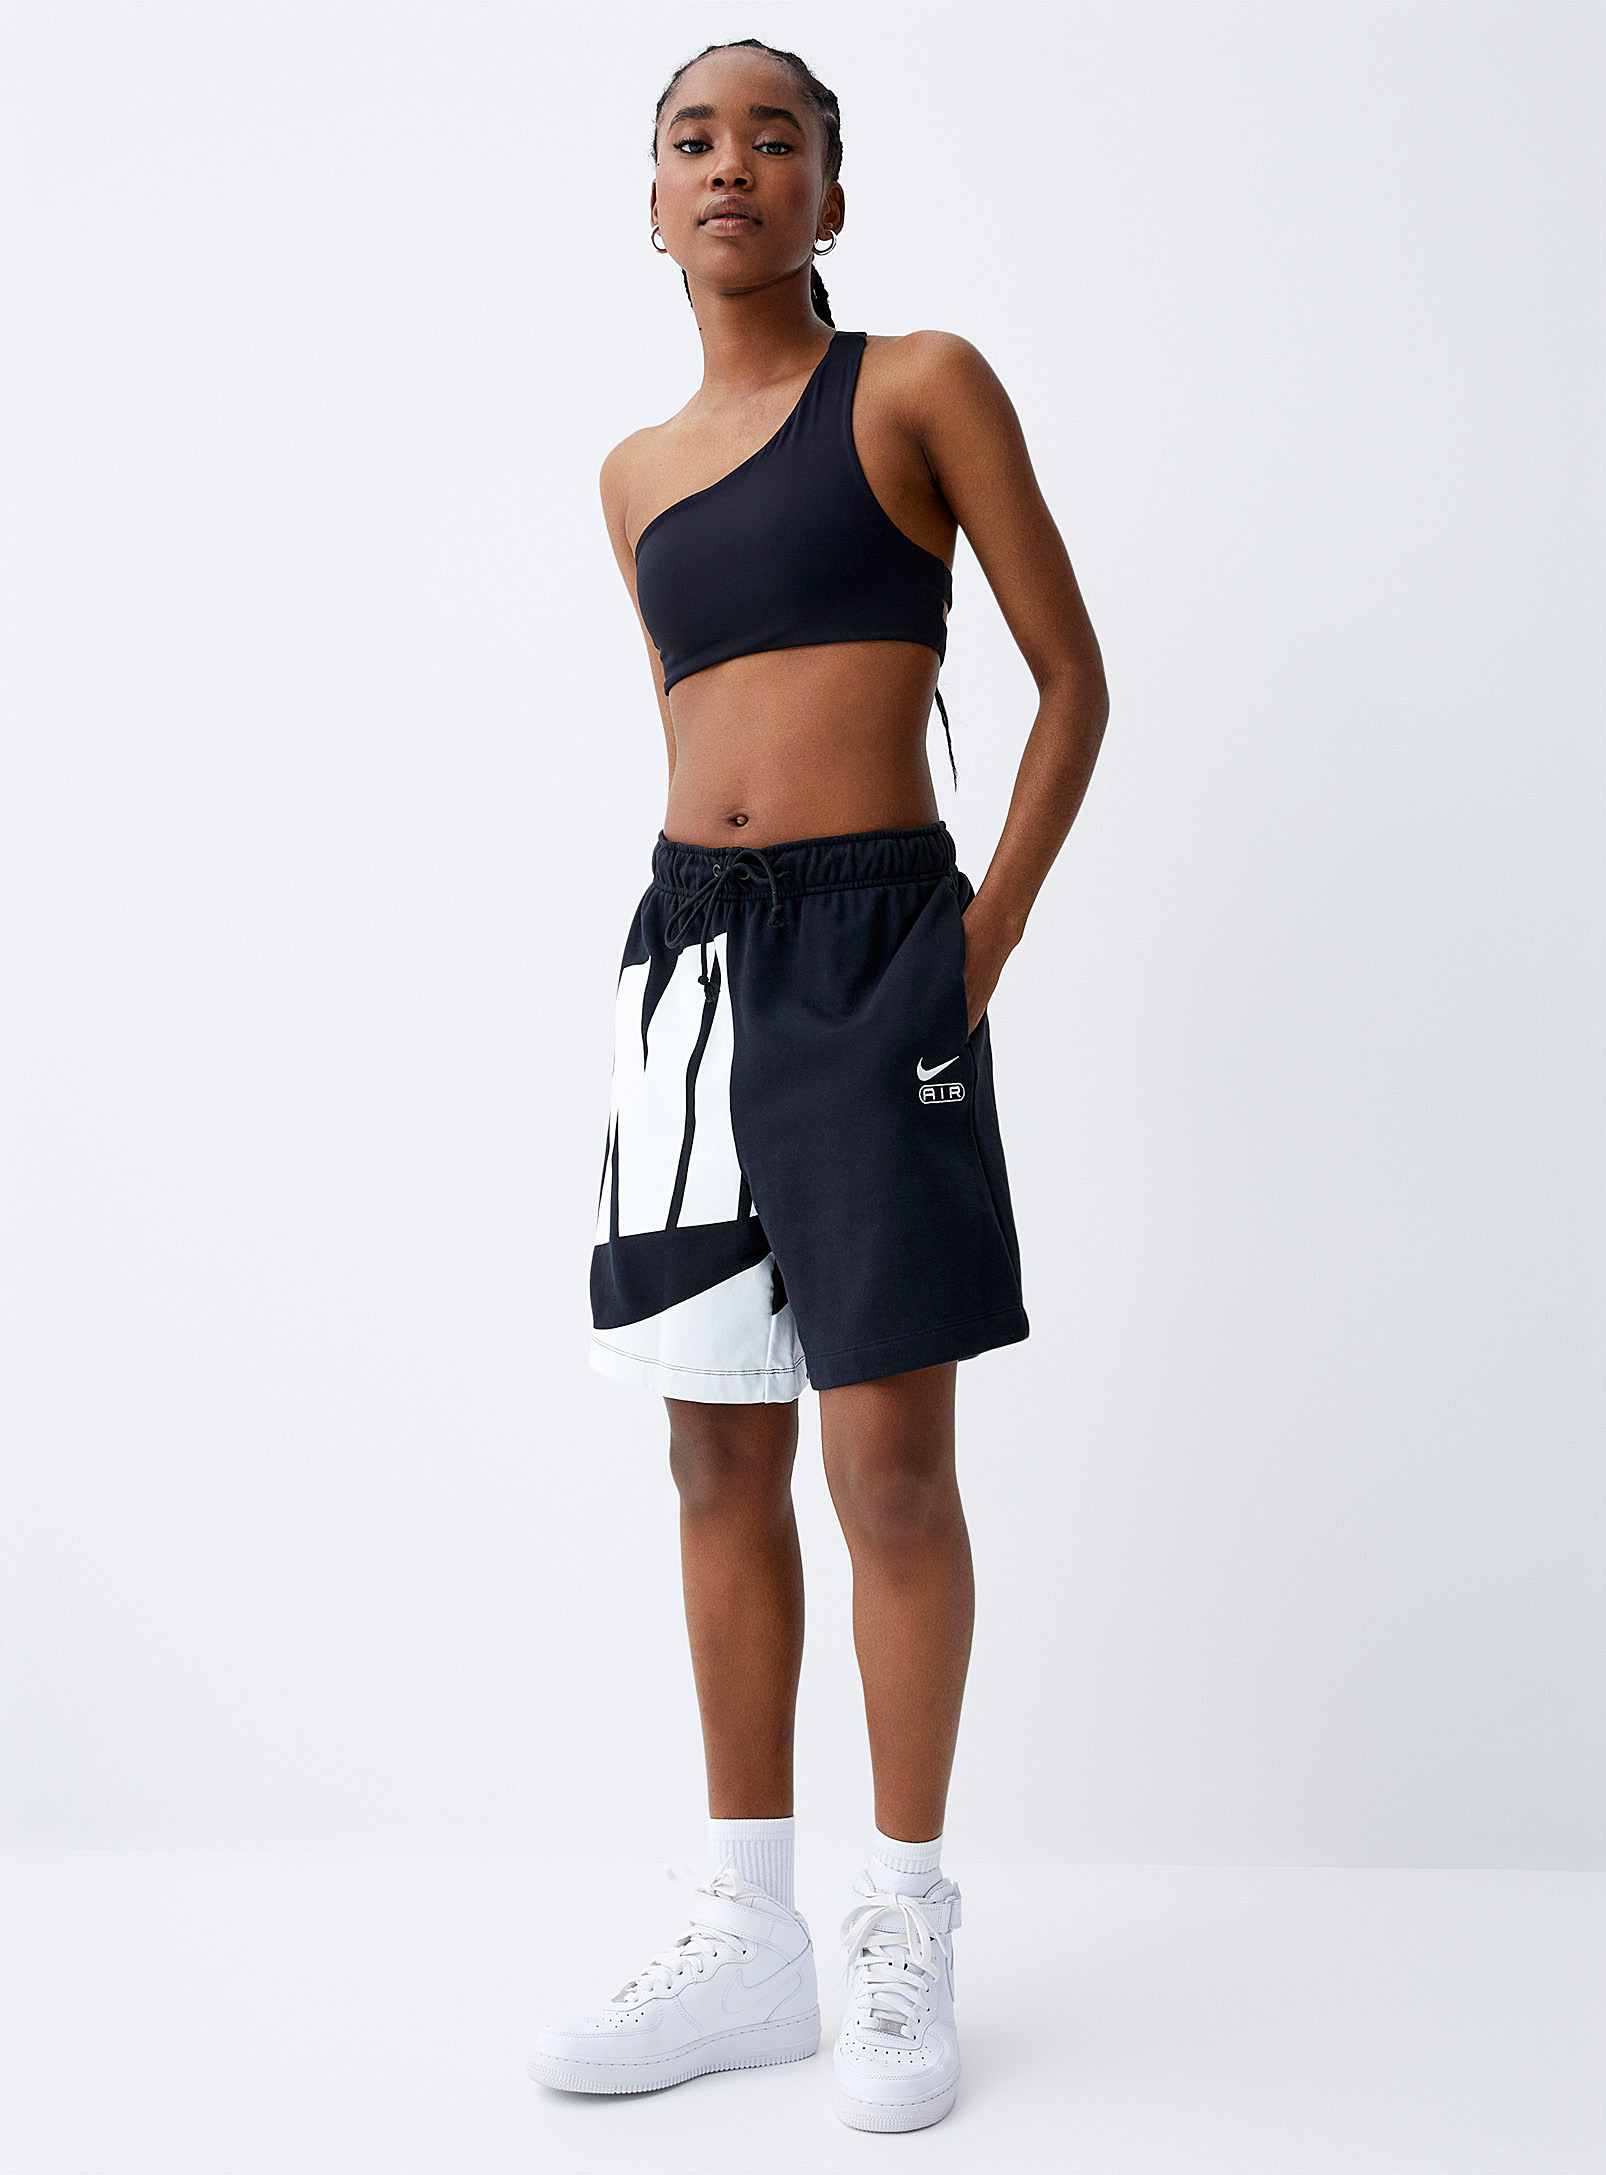 Nike - Women's Mega logo fleece short